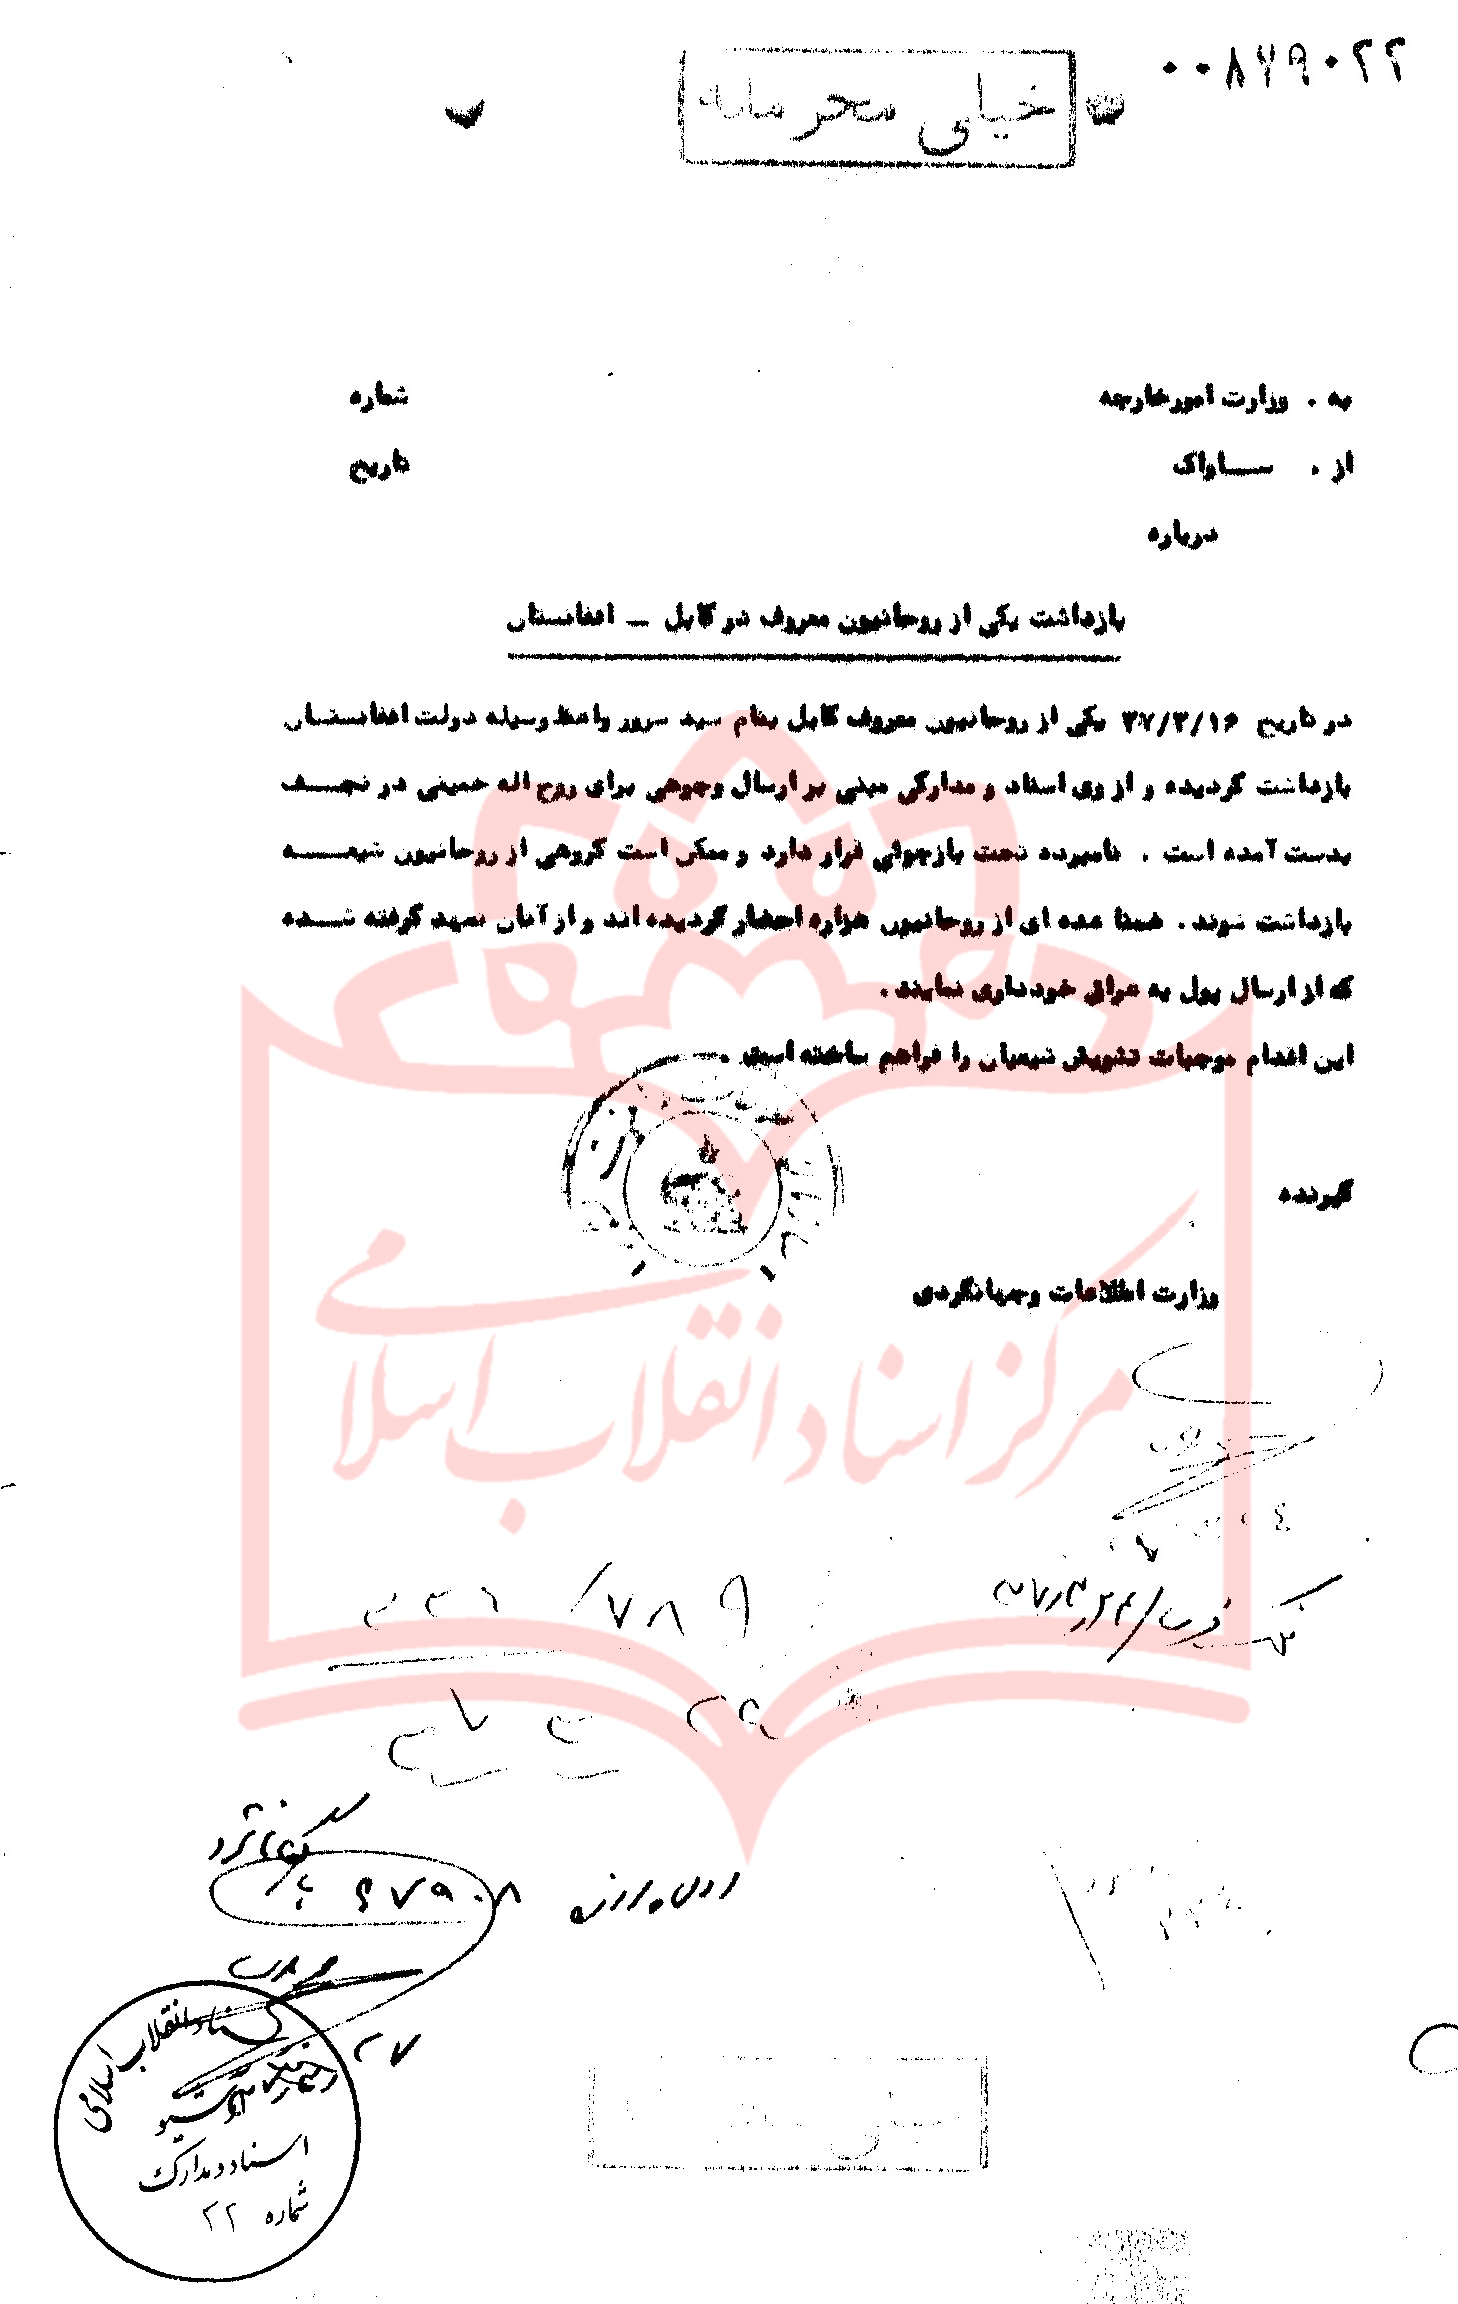 ارتباط طلاب افغانستانی با نهضت اسلامی/ گزارش ساواک از ارسال وجوهات شرعی از کابل برای امام خمینی